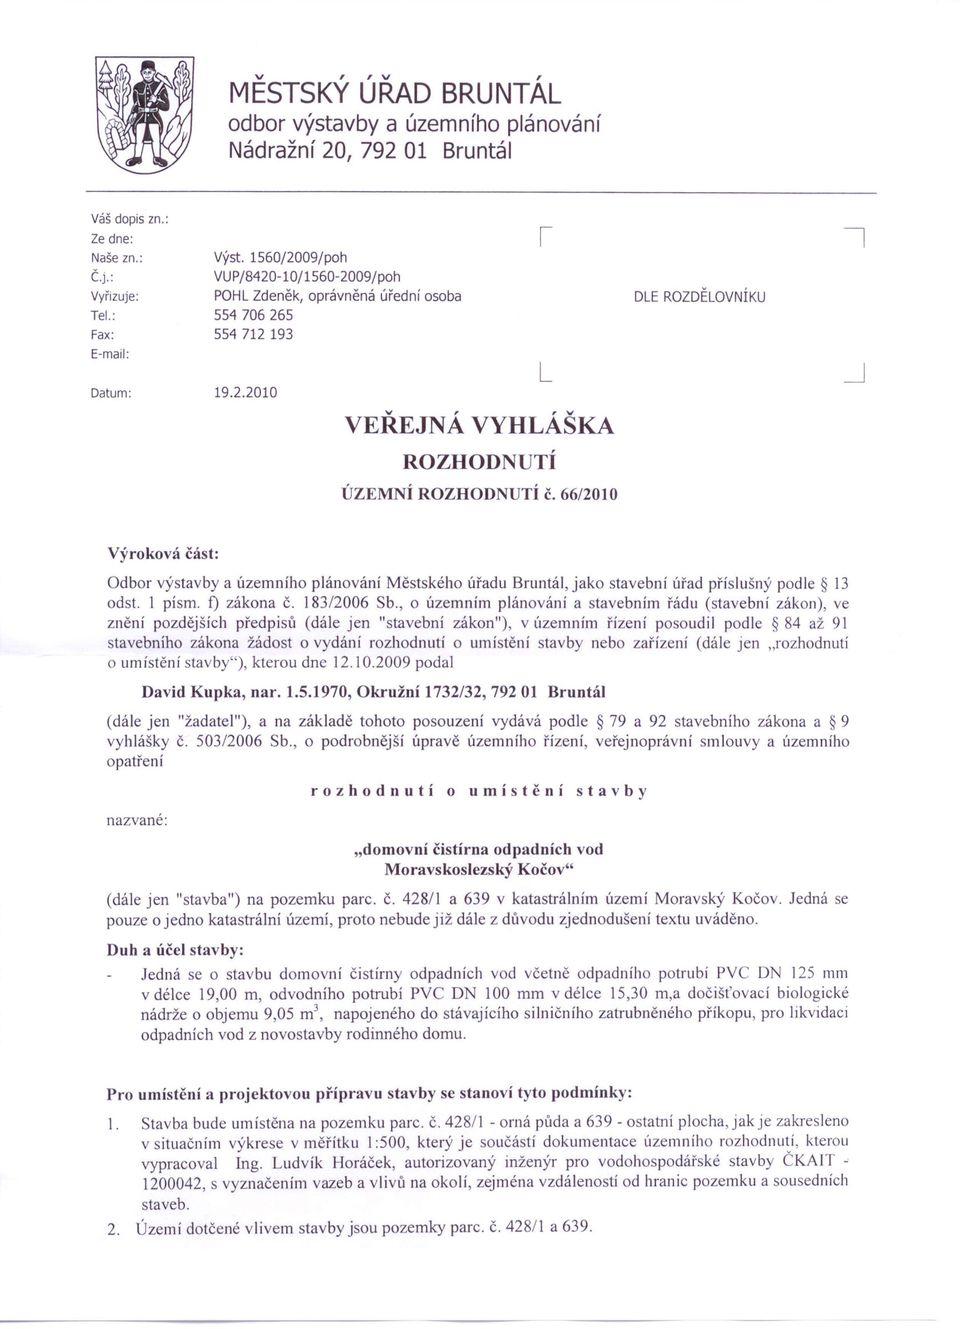 66/2010 DLE ROZDĚLOVNÍKU Výroková část: Odbor výstavby a územního plánování Městského úřadu Bruntál, jako stavební úřad příslušný podle 13 odst. 1 písmo f) zákona Č. 183/2006 Sb.